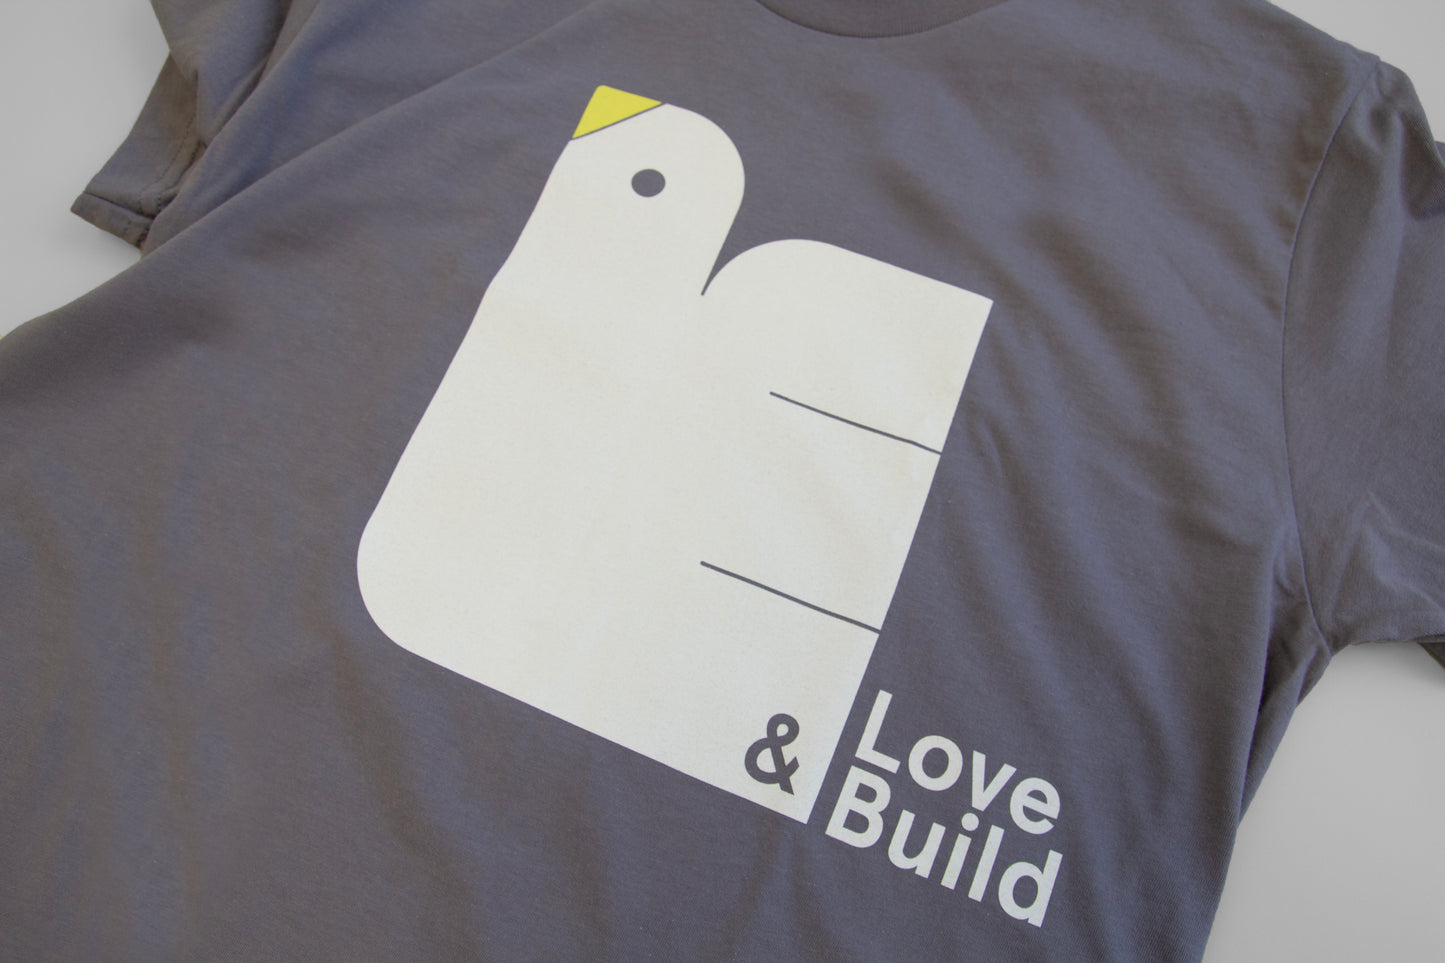 Love & Build